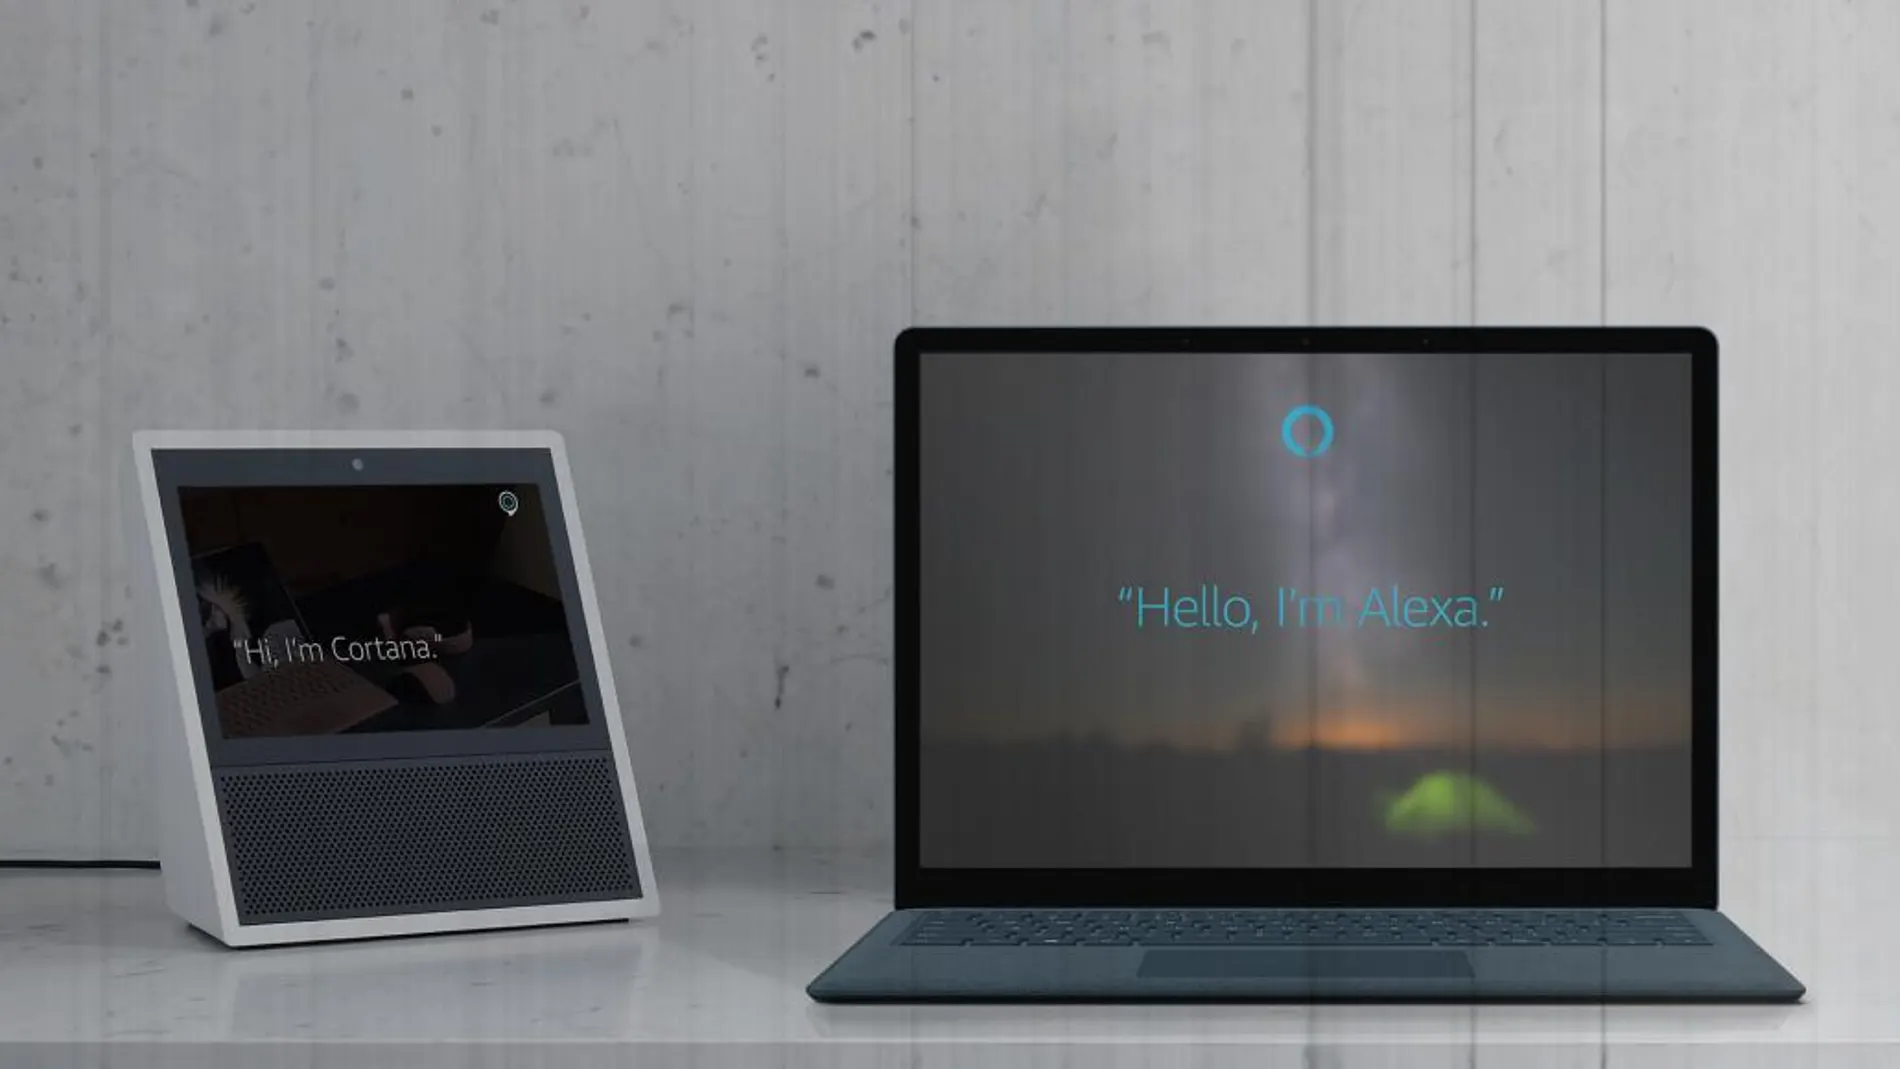 Los asistentes Cortana y Alexa podrán muy pronto interactuar